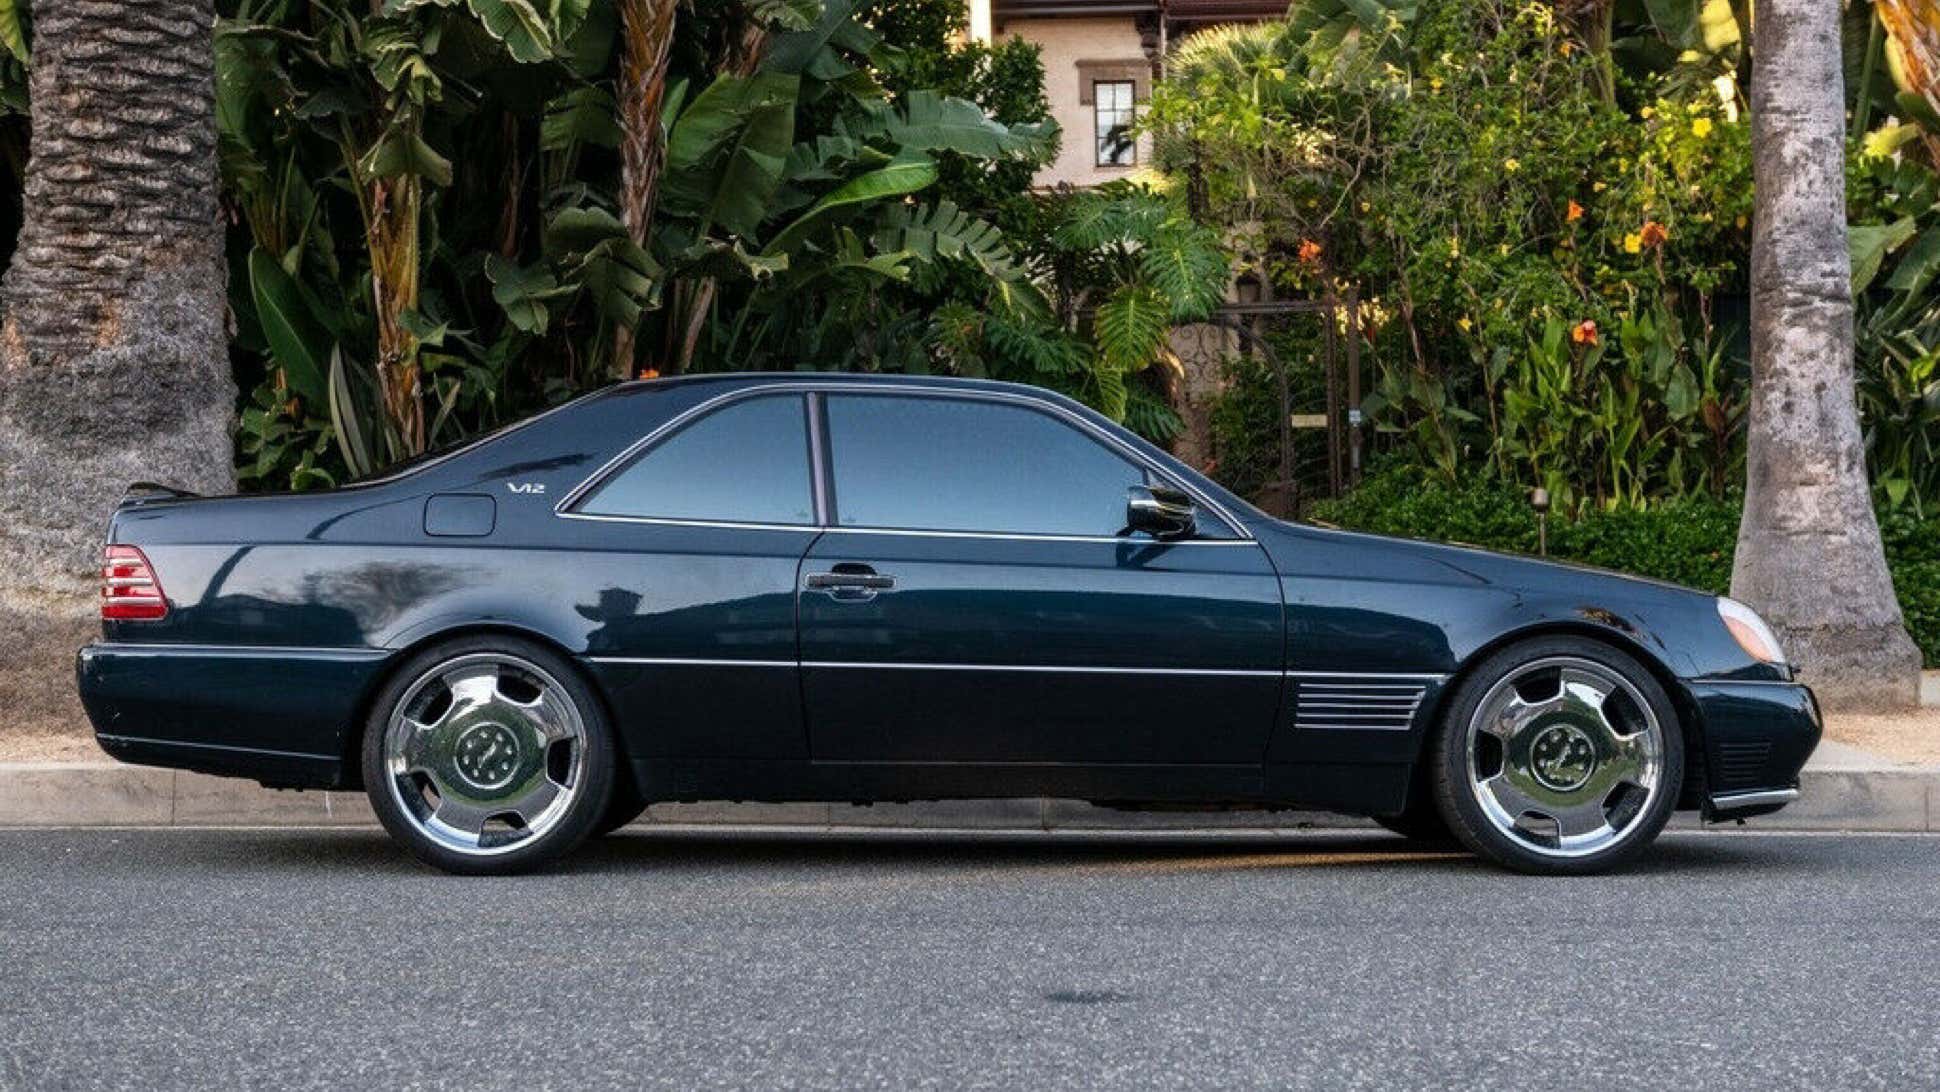 Mercedes-Benz S600 Lorinser tahun 1996 bekas pernah dimilik Michael Jordan Beverly Hills Club